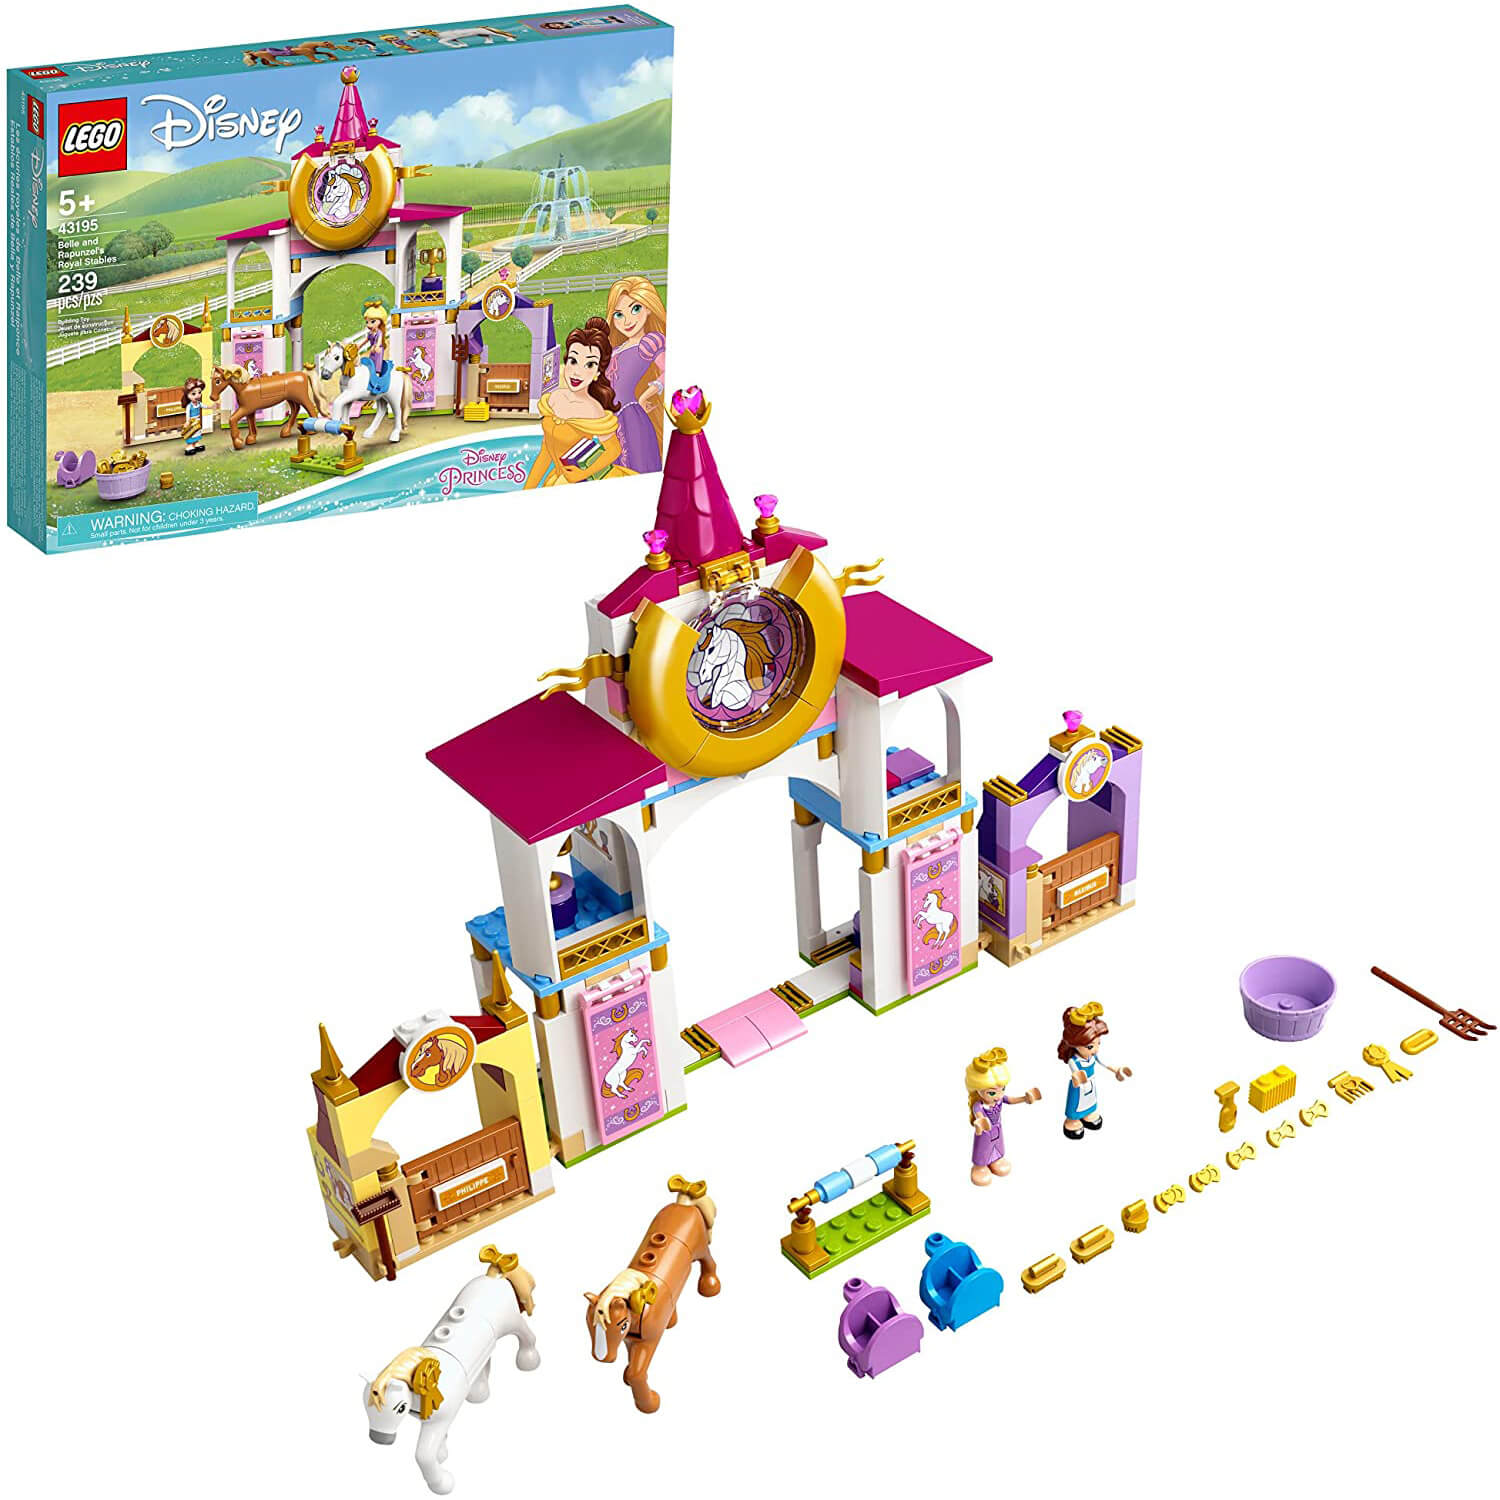 LEGO Disney Princess Belle and Rapunzel's Royal Stables 239 Piece Building Set (43195)